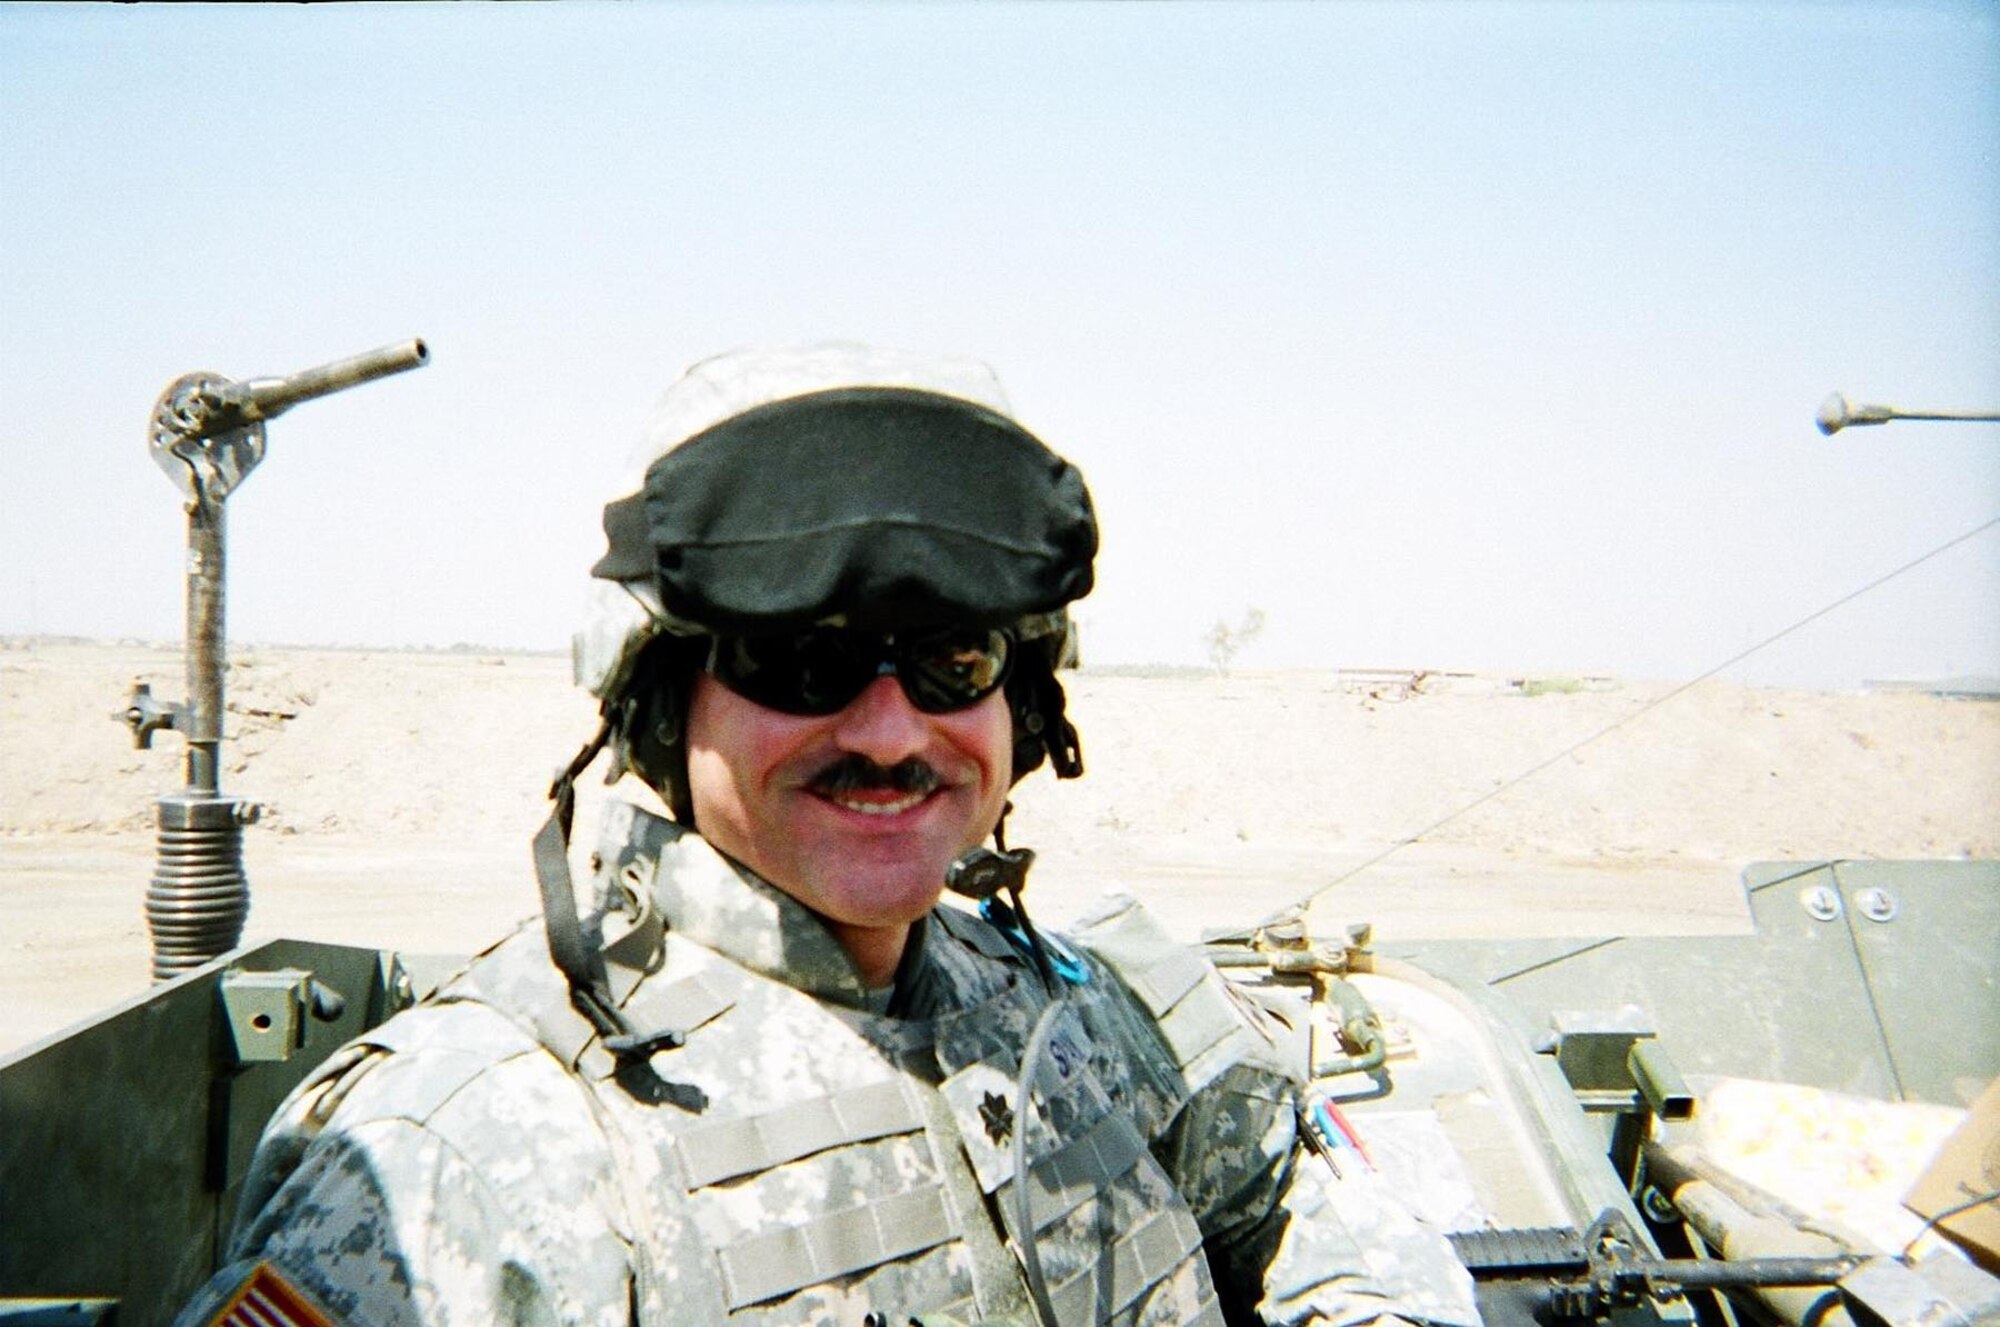 Lt. Col. Wayne Shaw on a Stryker vehicle patrol in Baghdad in September 2006. (U.S. Air Force photo)